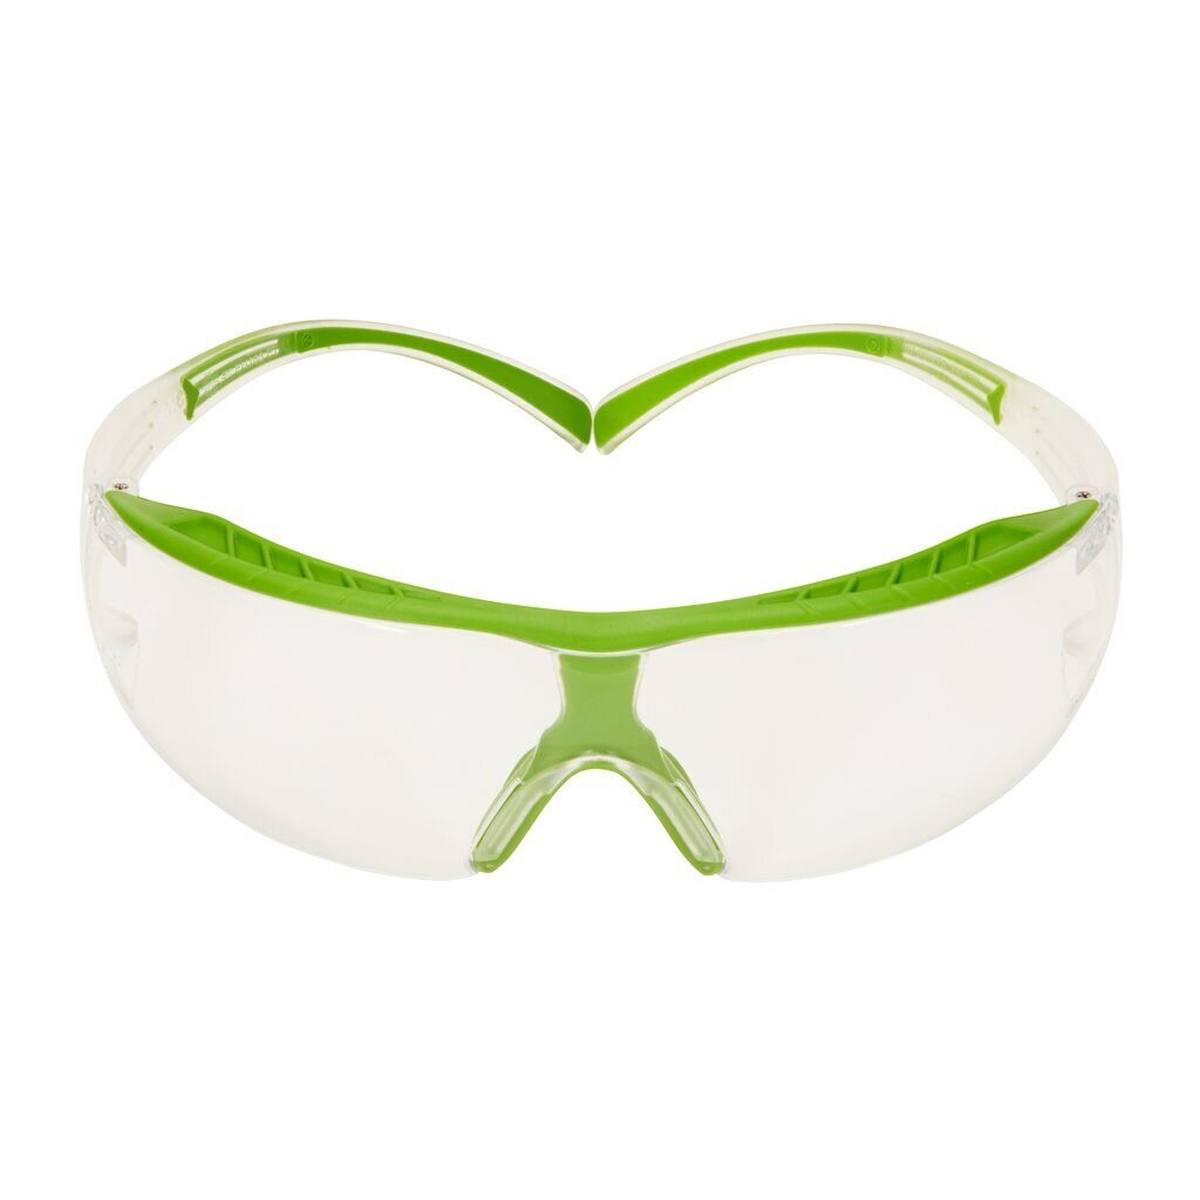 3M SecureFit 400X Schutzbrille, Gestell grün-transparent, Scotchgard Anti-Fog-Beschichtung (K/N), klare Scheibe, SF401XSGAF-GRN